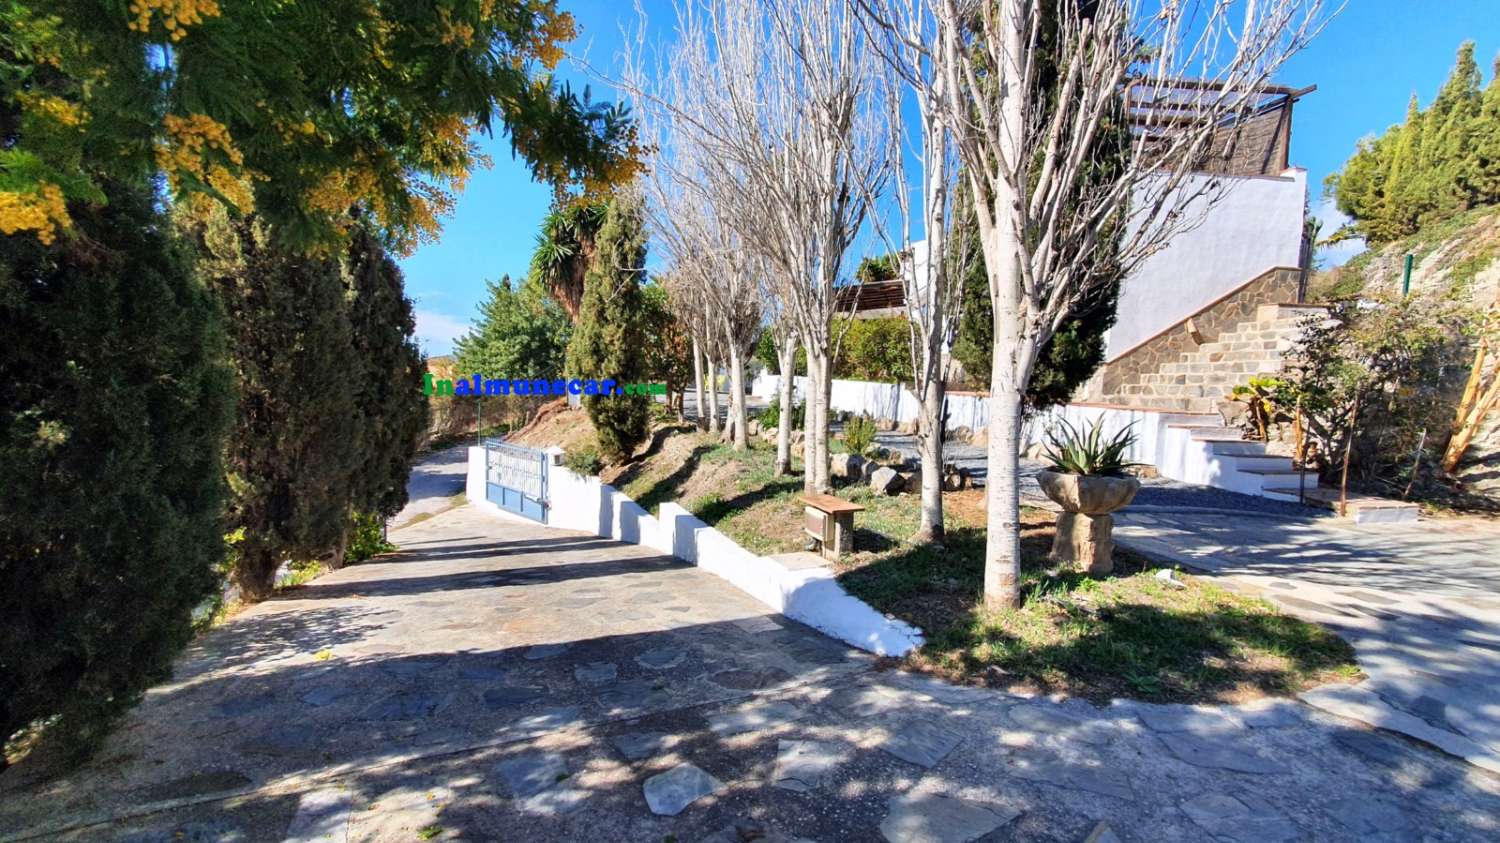 Landvilla til salg beliggende i bugten La Herradura, Andalusien.